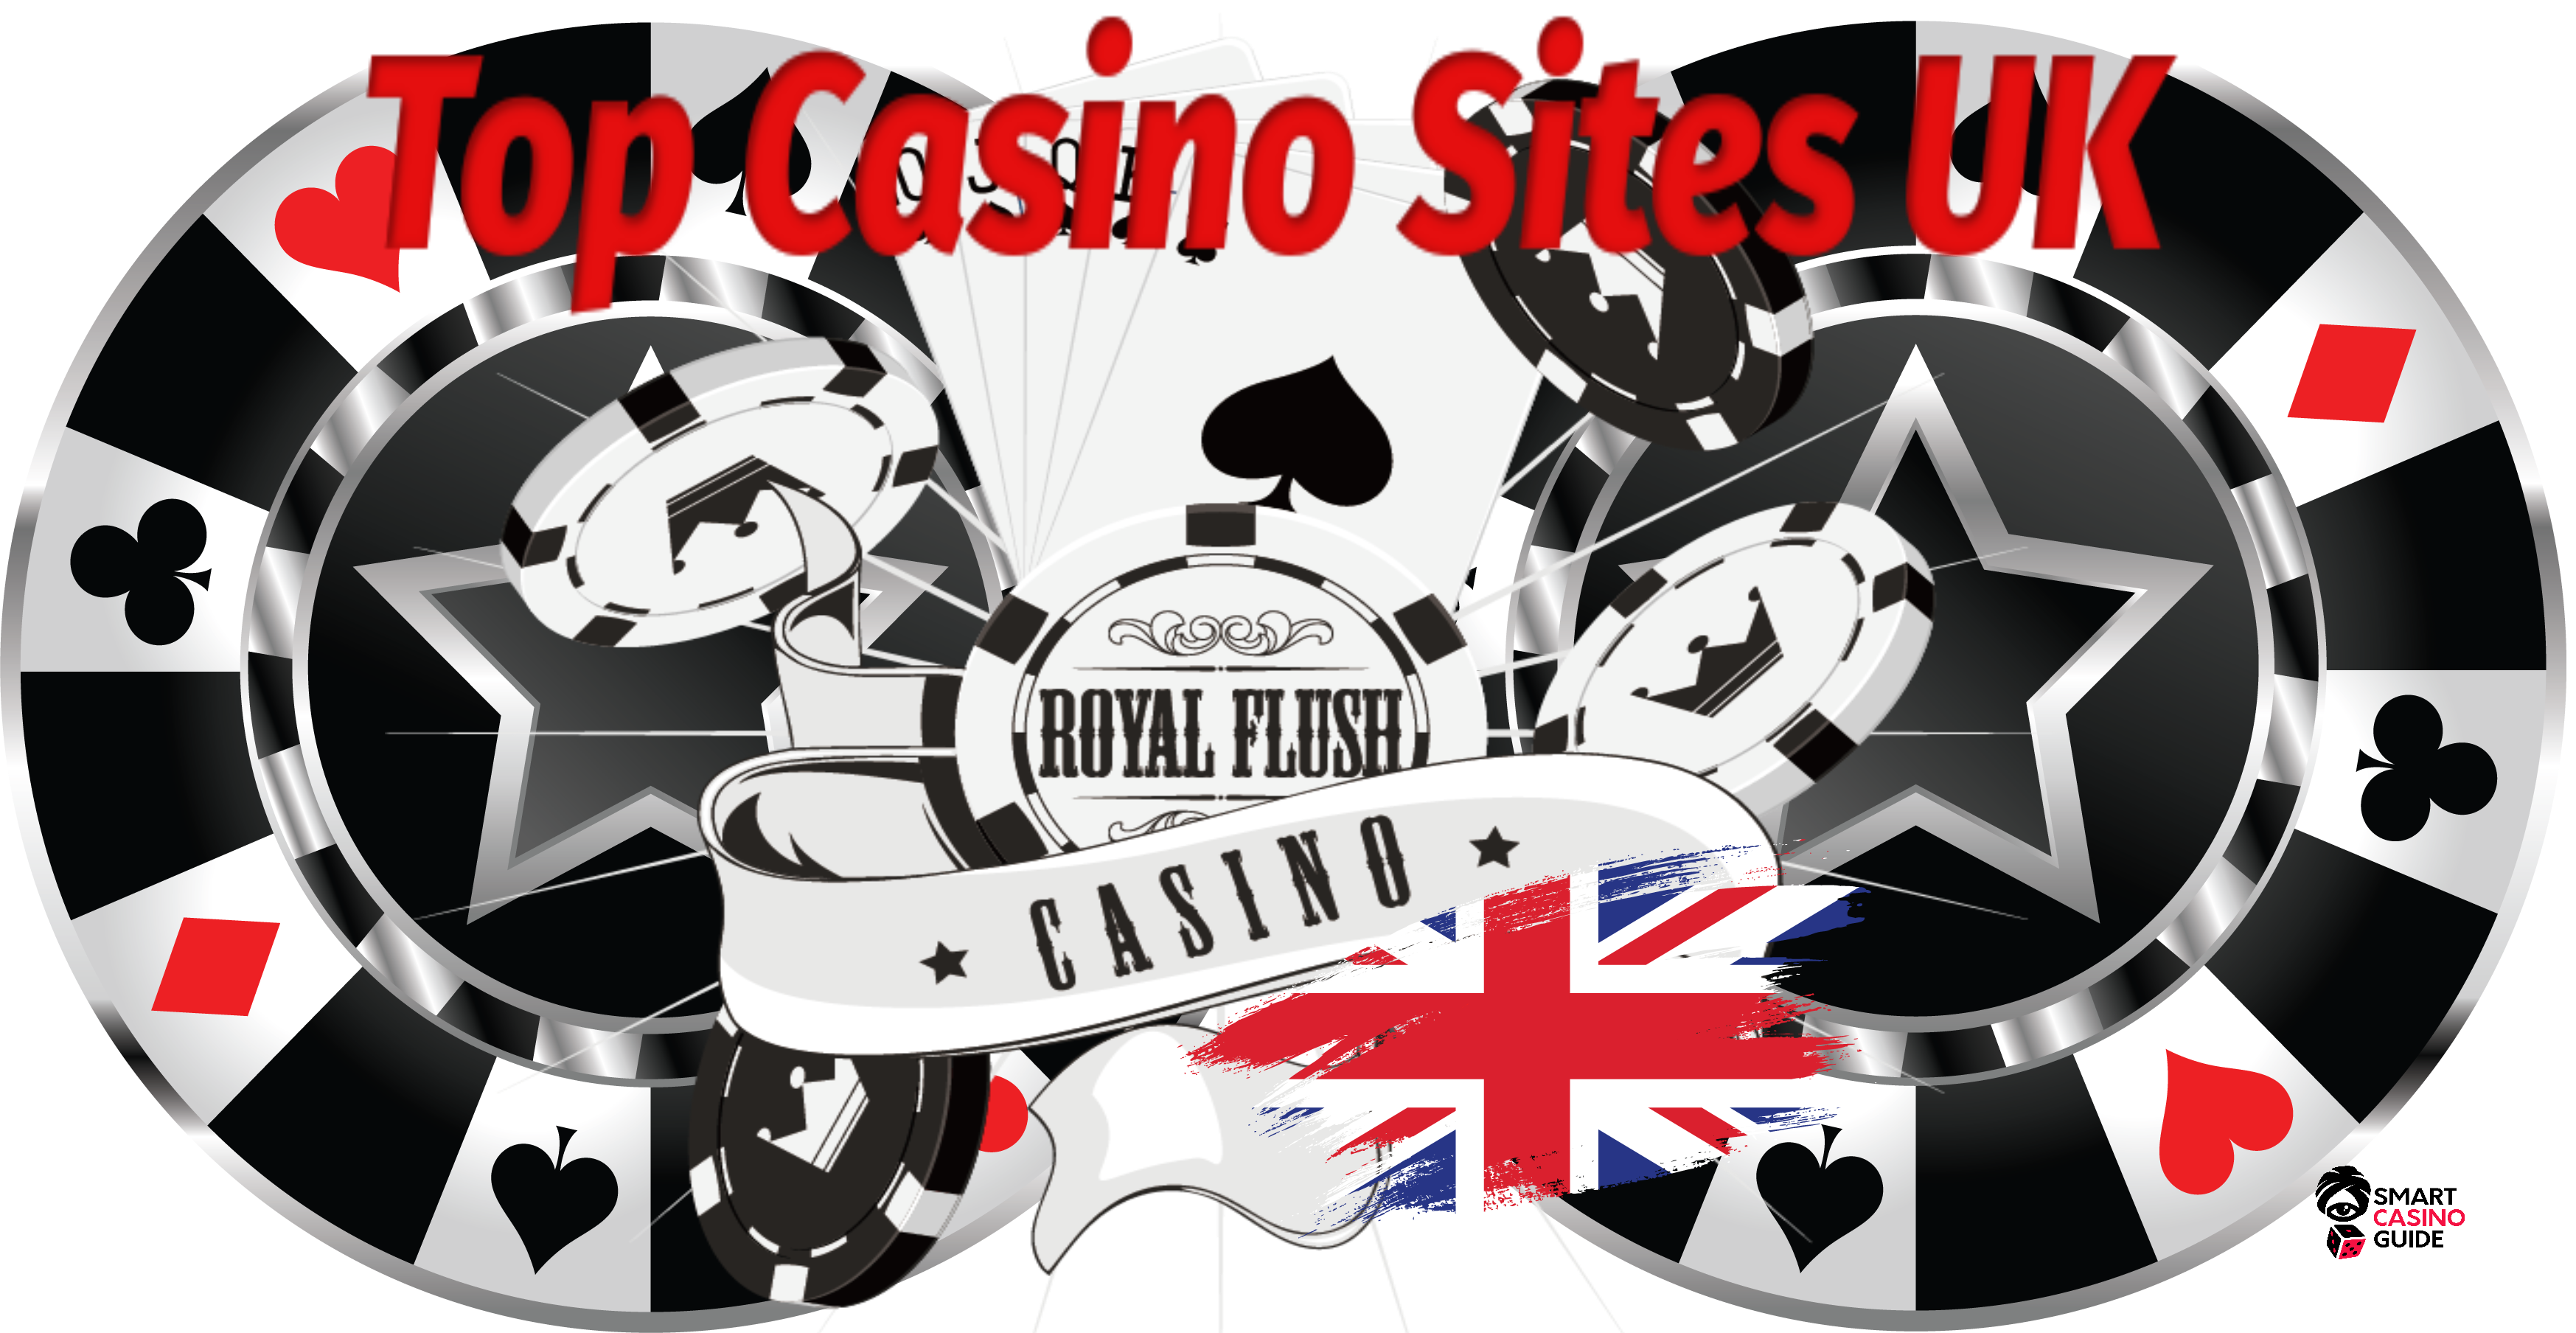 Best Casino Sites Uk